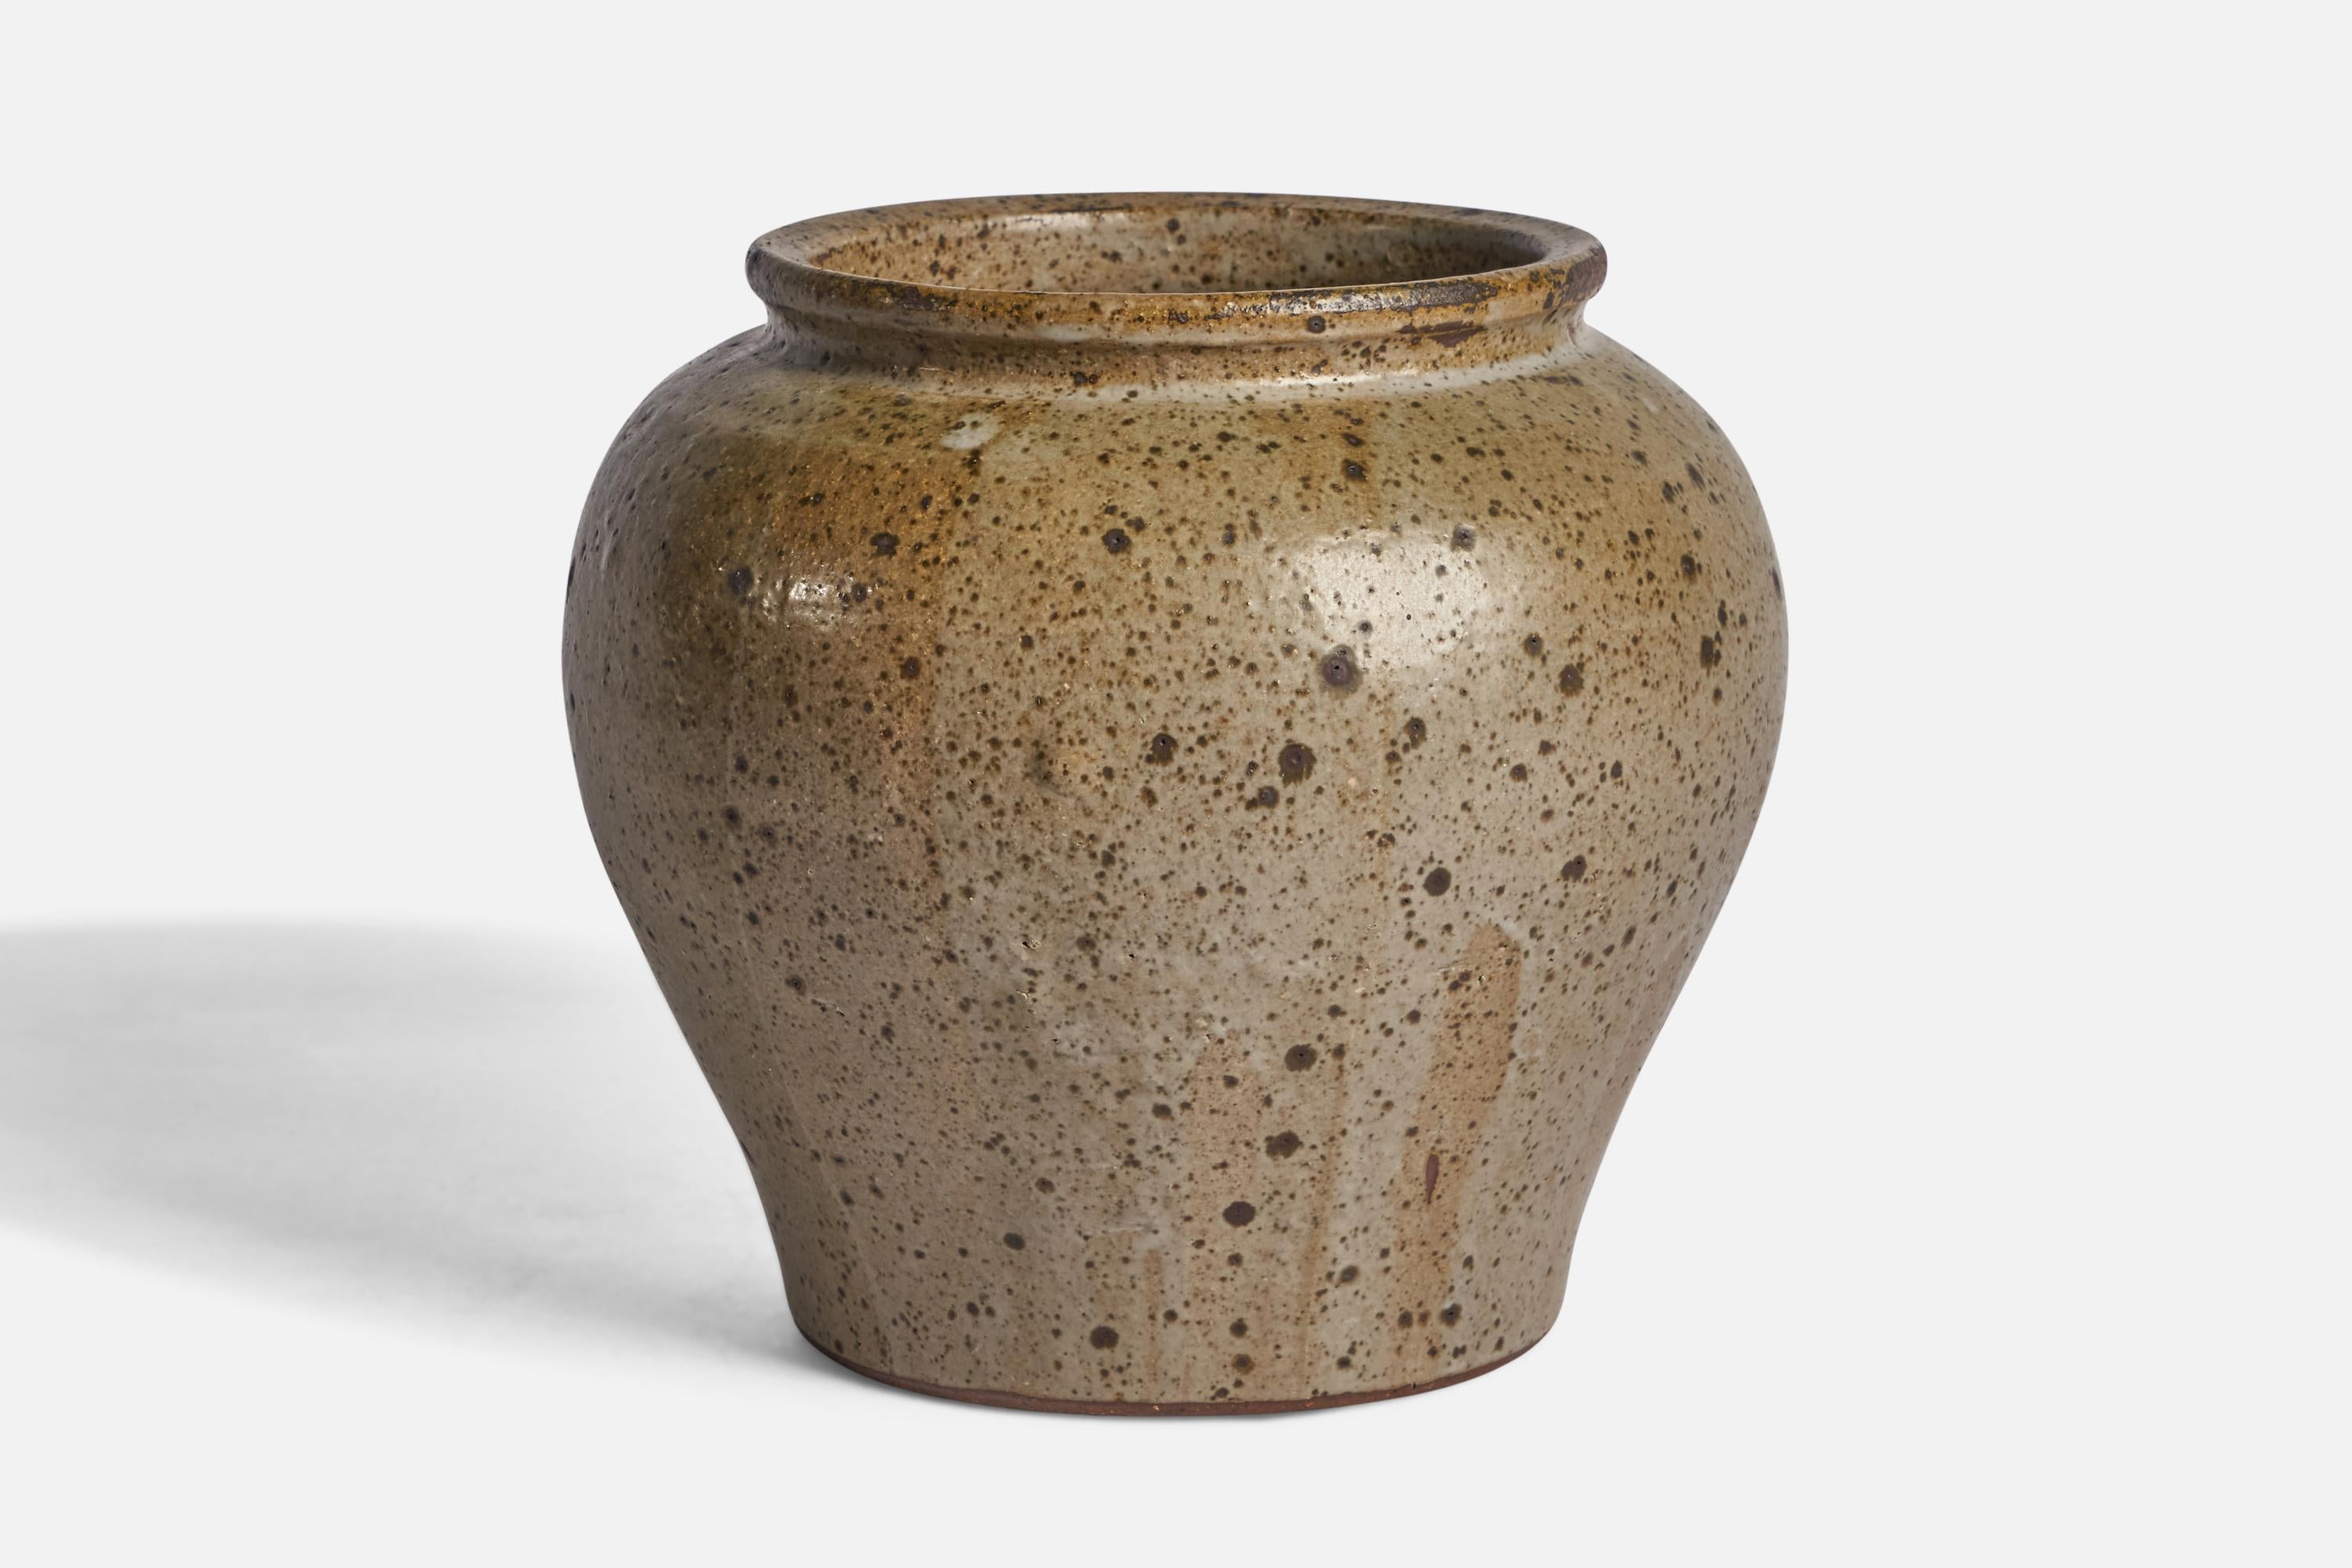 Un grand vase en grès émaillé gris conçu et produit par Rolf Palm, Mölle, Suède, 1968.
